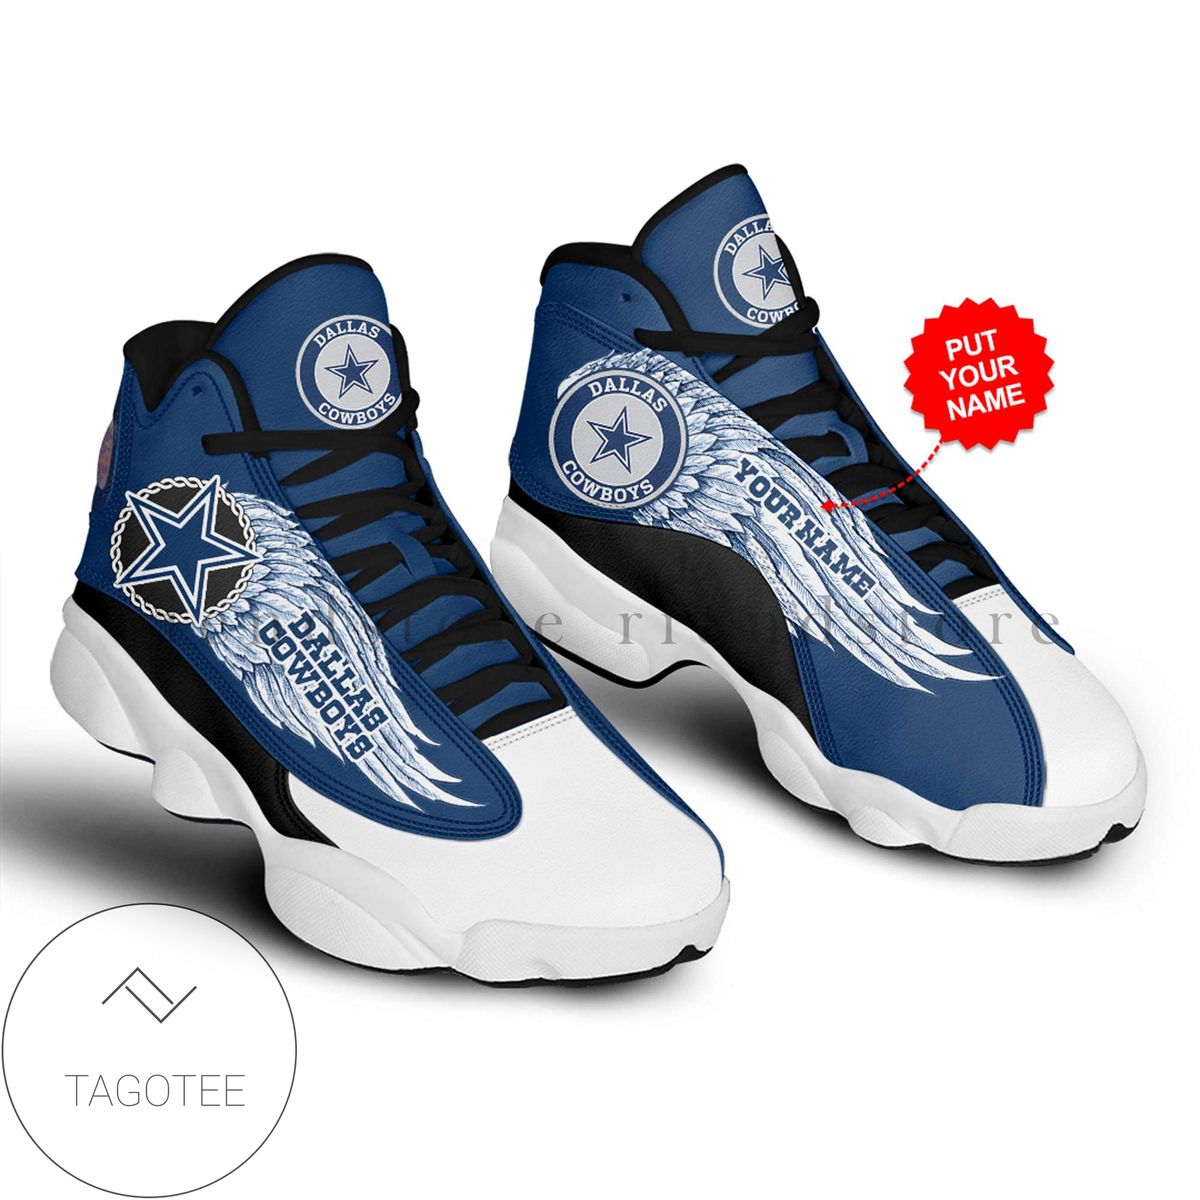 Personalized Dallas Cowboys Air Jordan 13 Shoes Sneakers